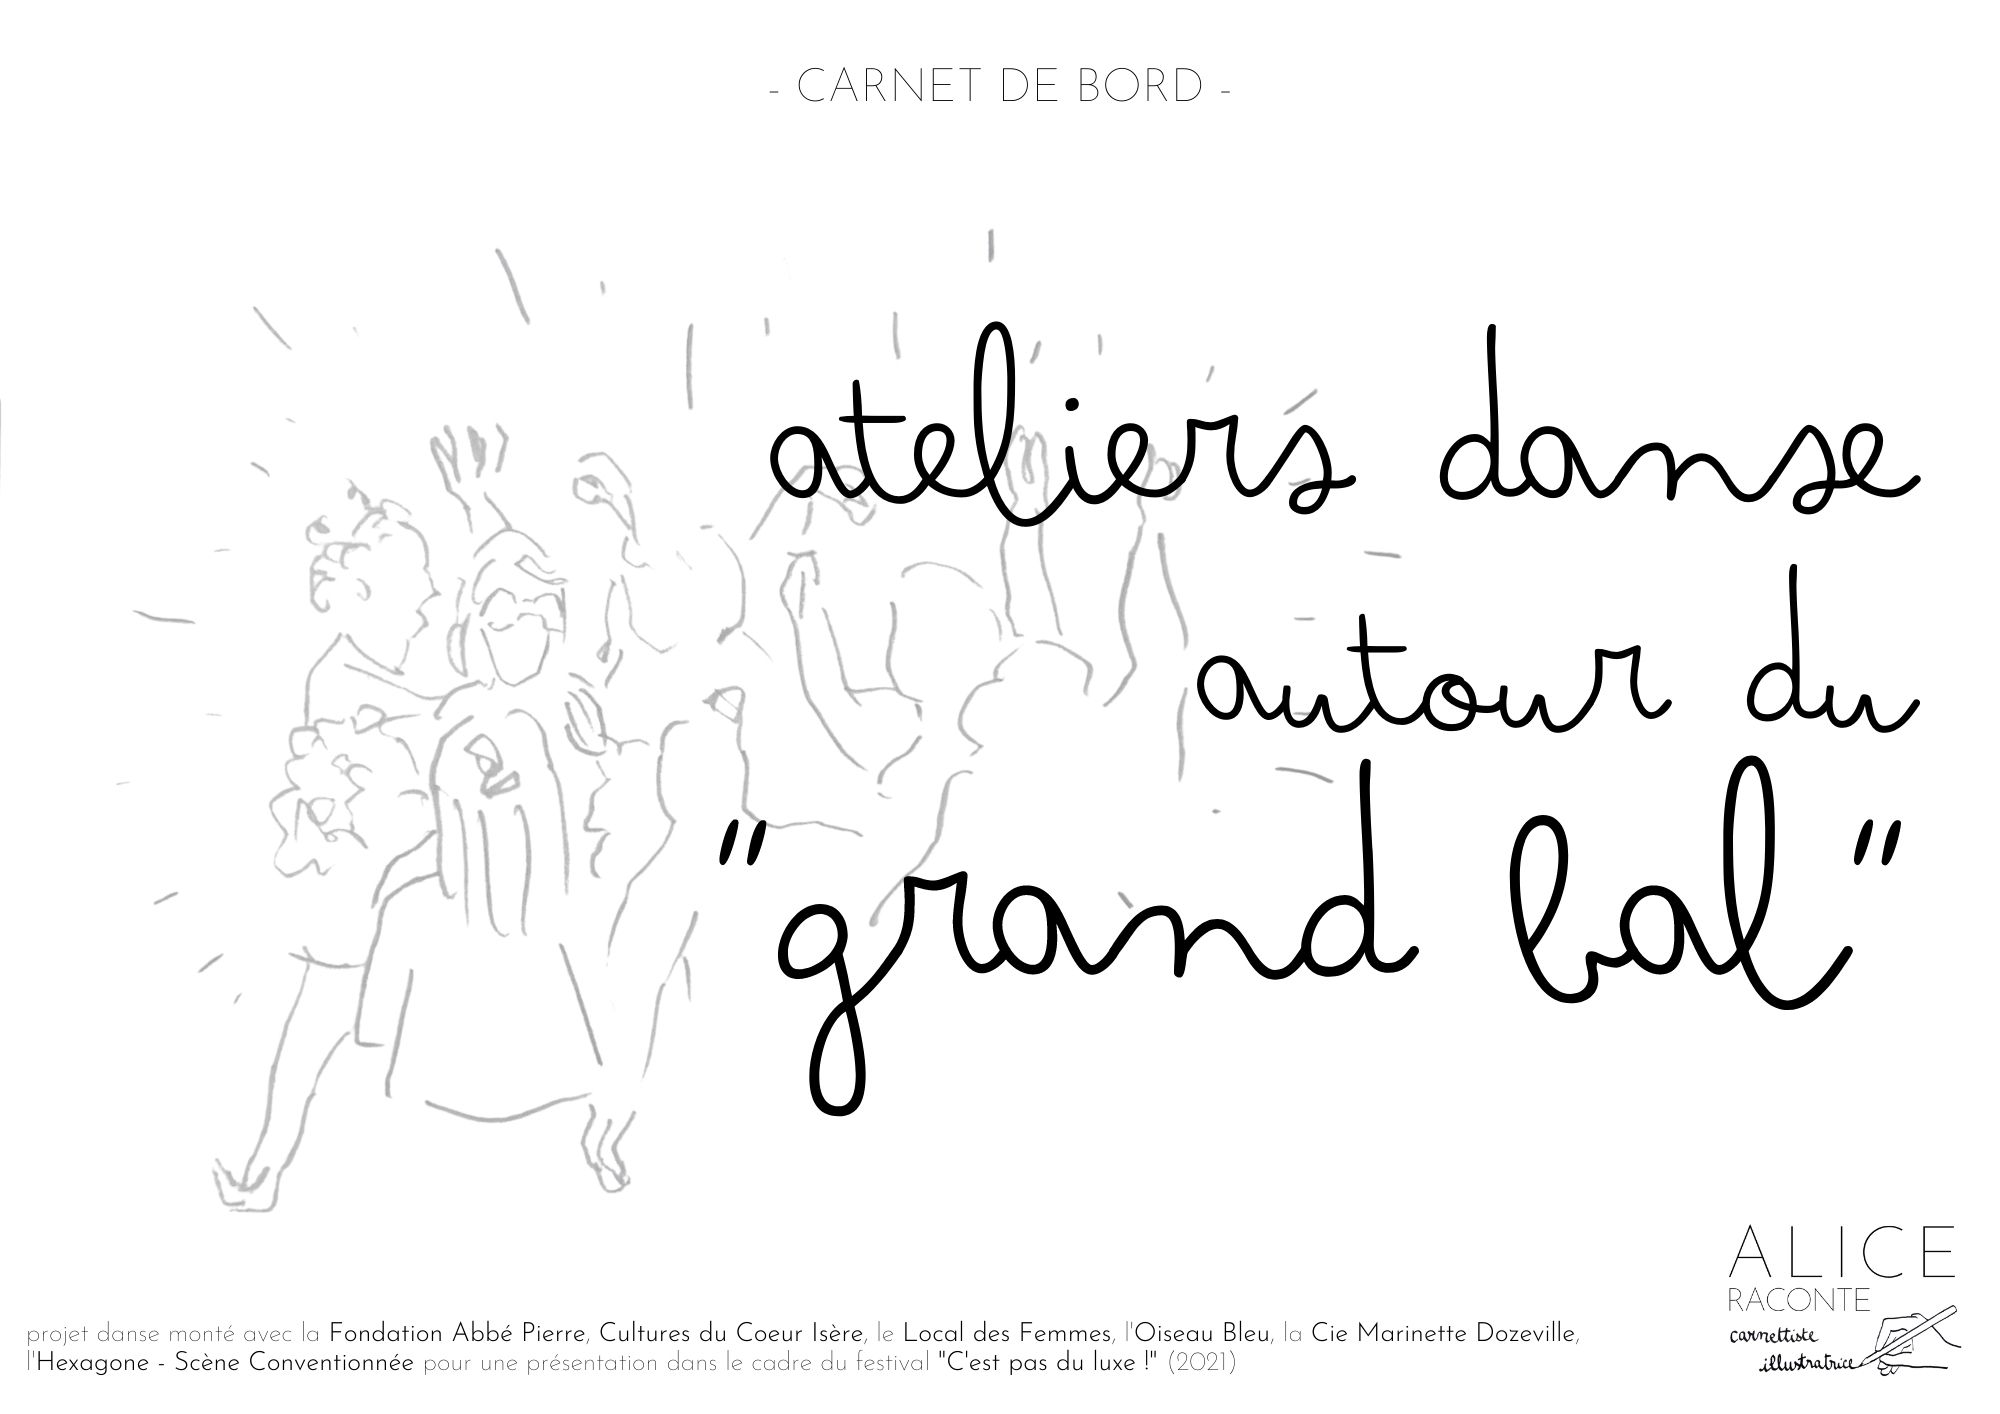 alice raconte - carnettiste - illustratrice - grenoble -  reportage dessine - danse - hexagone - fondation abbe pierre